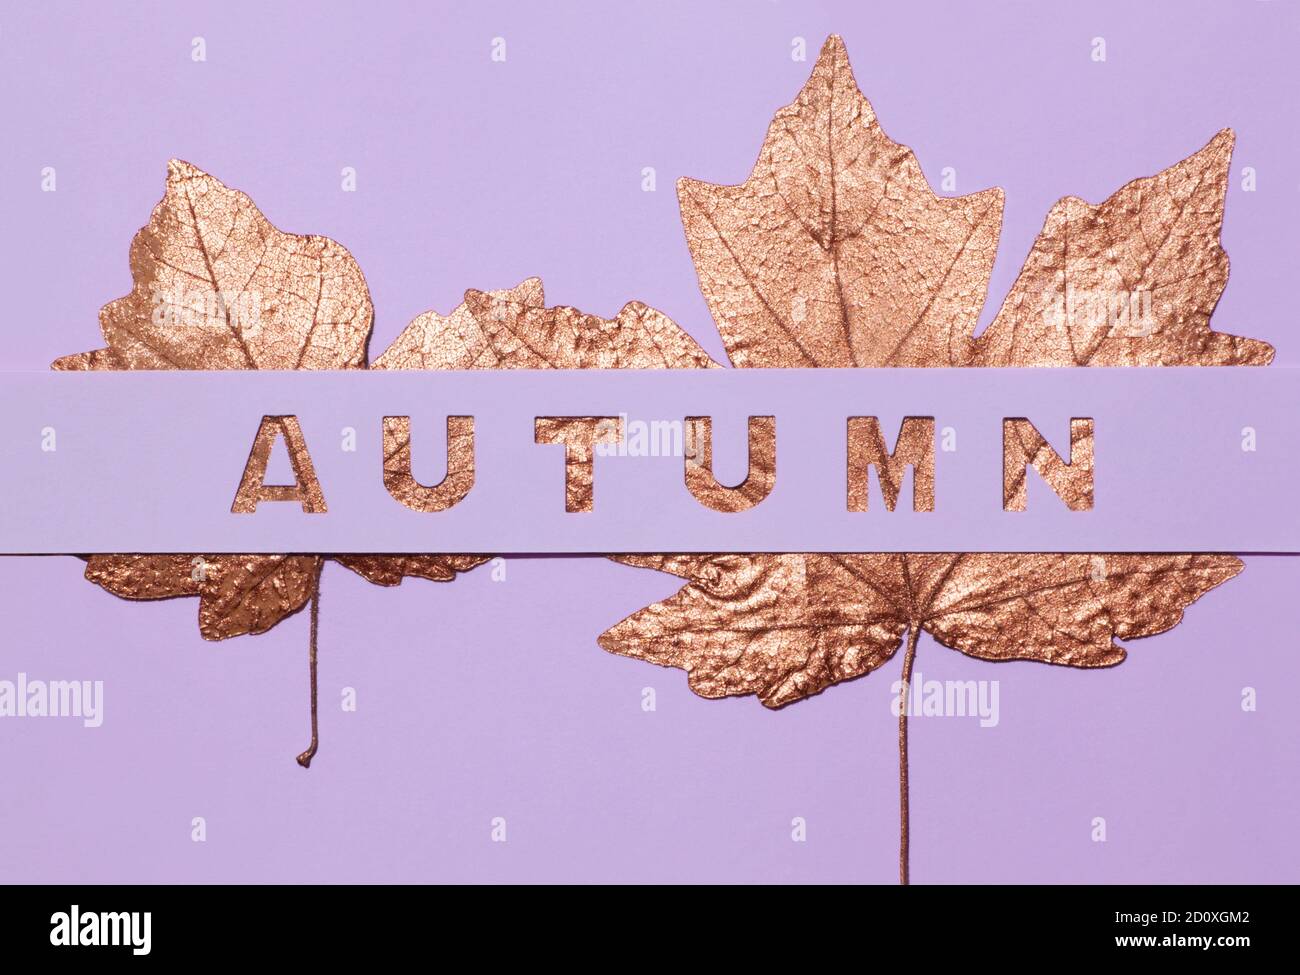 L'inscription conceptuelle l'automne est sculpté dans un fond violet, en vertu de laquelle vous pouvez voir les feuilles dorées. Banque D'Images